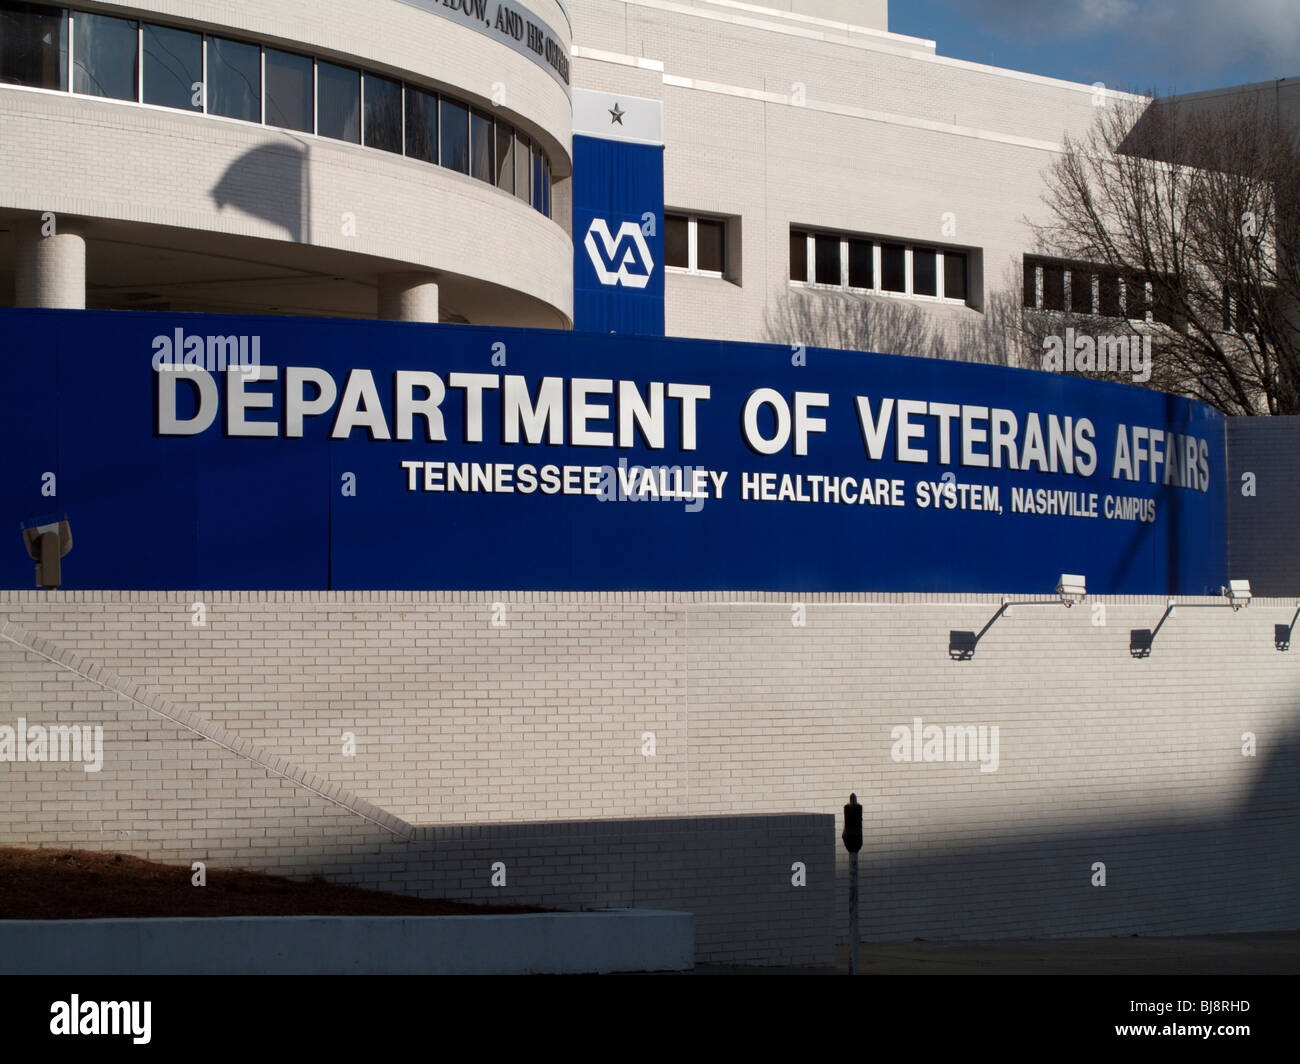 Ministère des Affaires des anciens combattants l'hôpital. Nashville, Tennessee. Banque D'Images